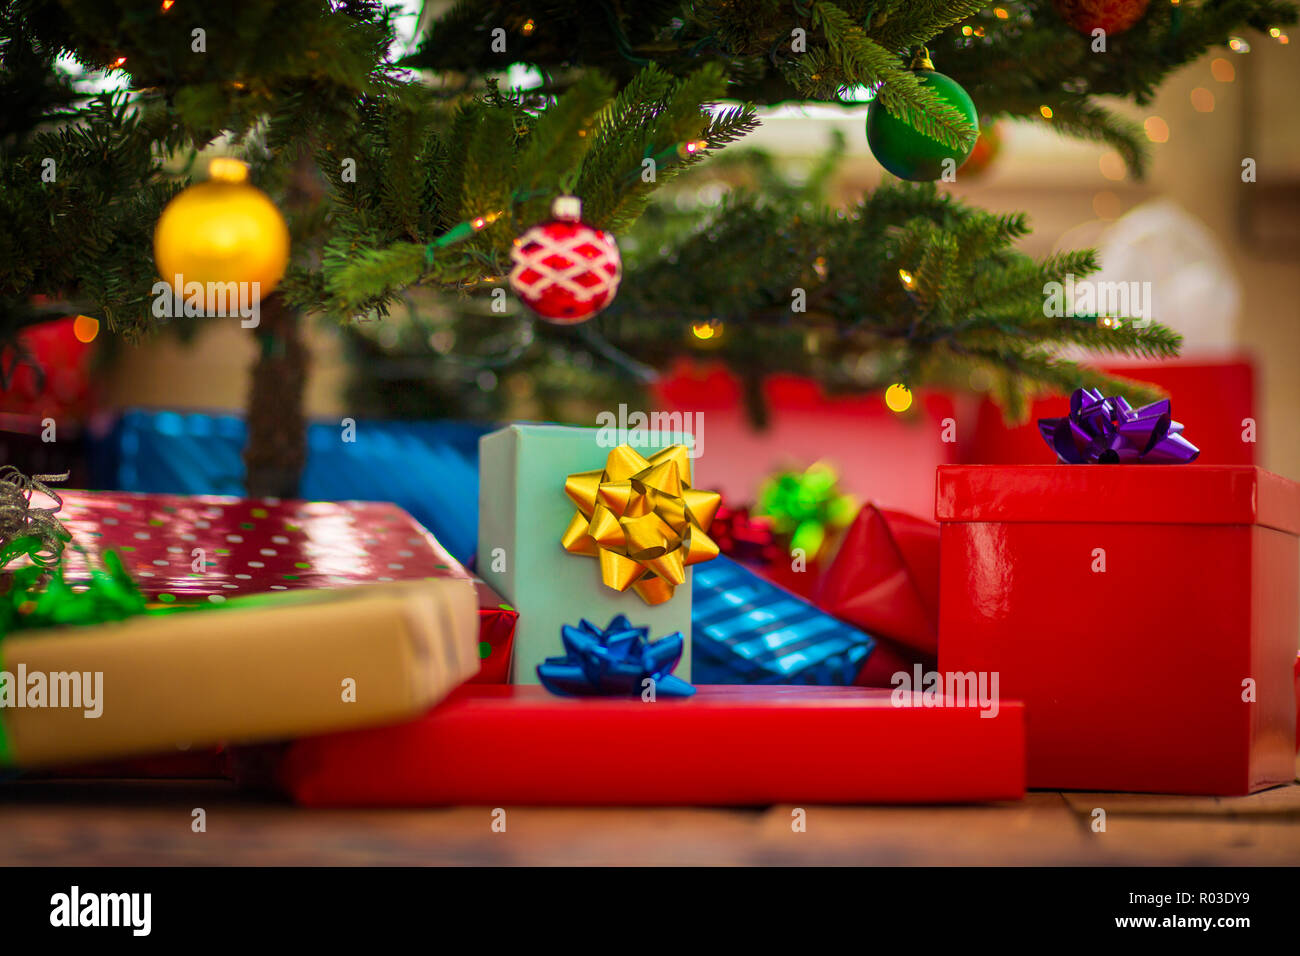 Stock Regali Di Natale.Avvolgere I Regali Di Natale In Attesa Sotto Un Albero Di Natale Foto Stock Alamy